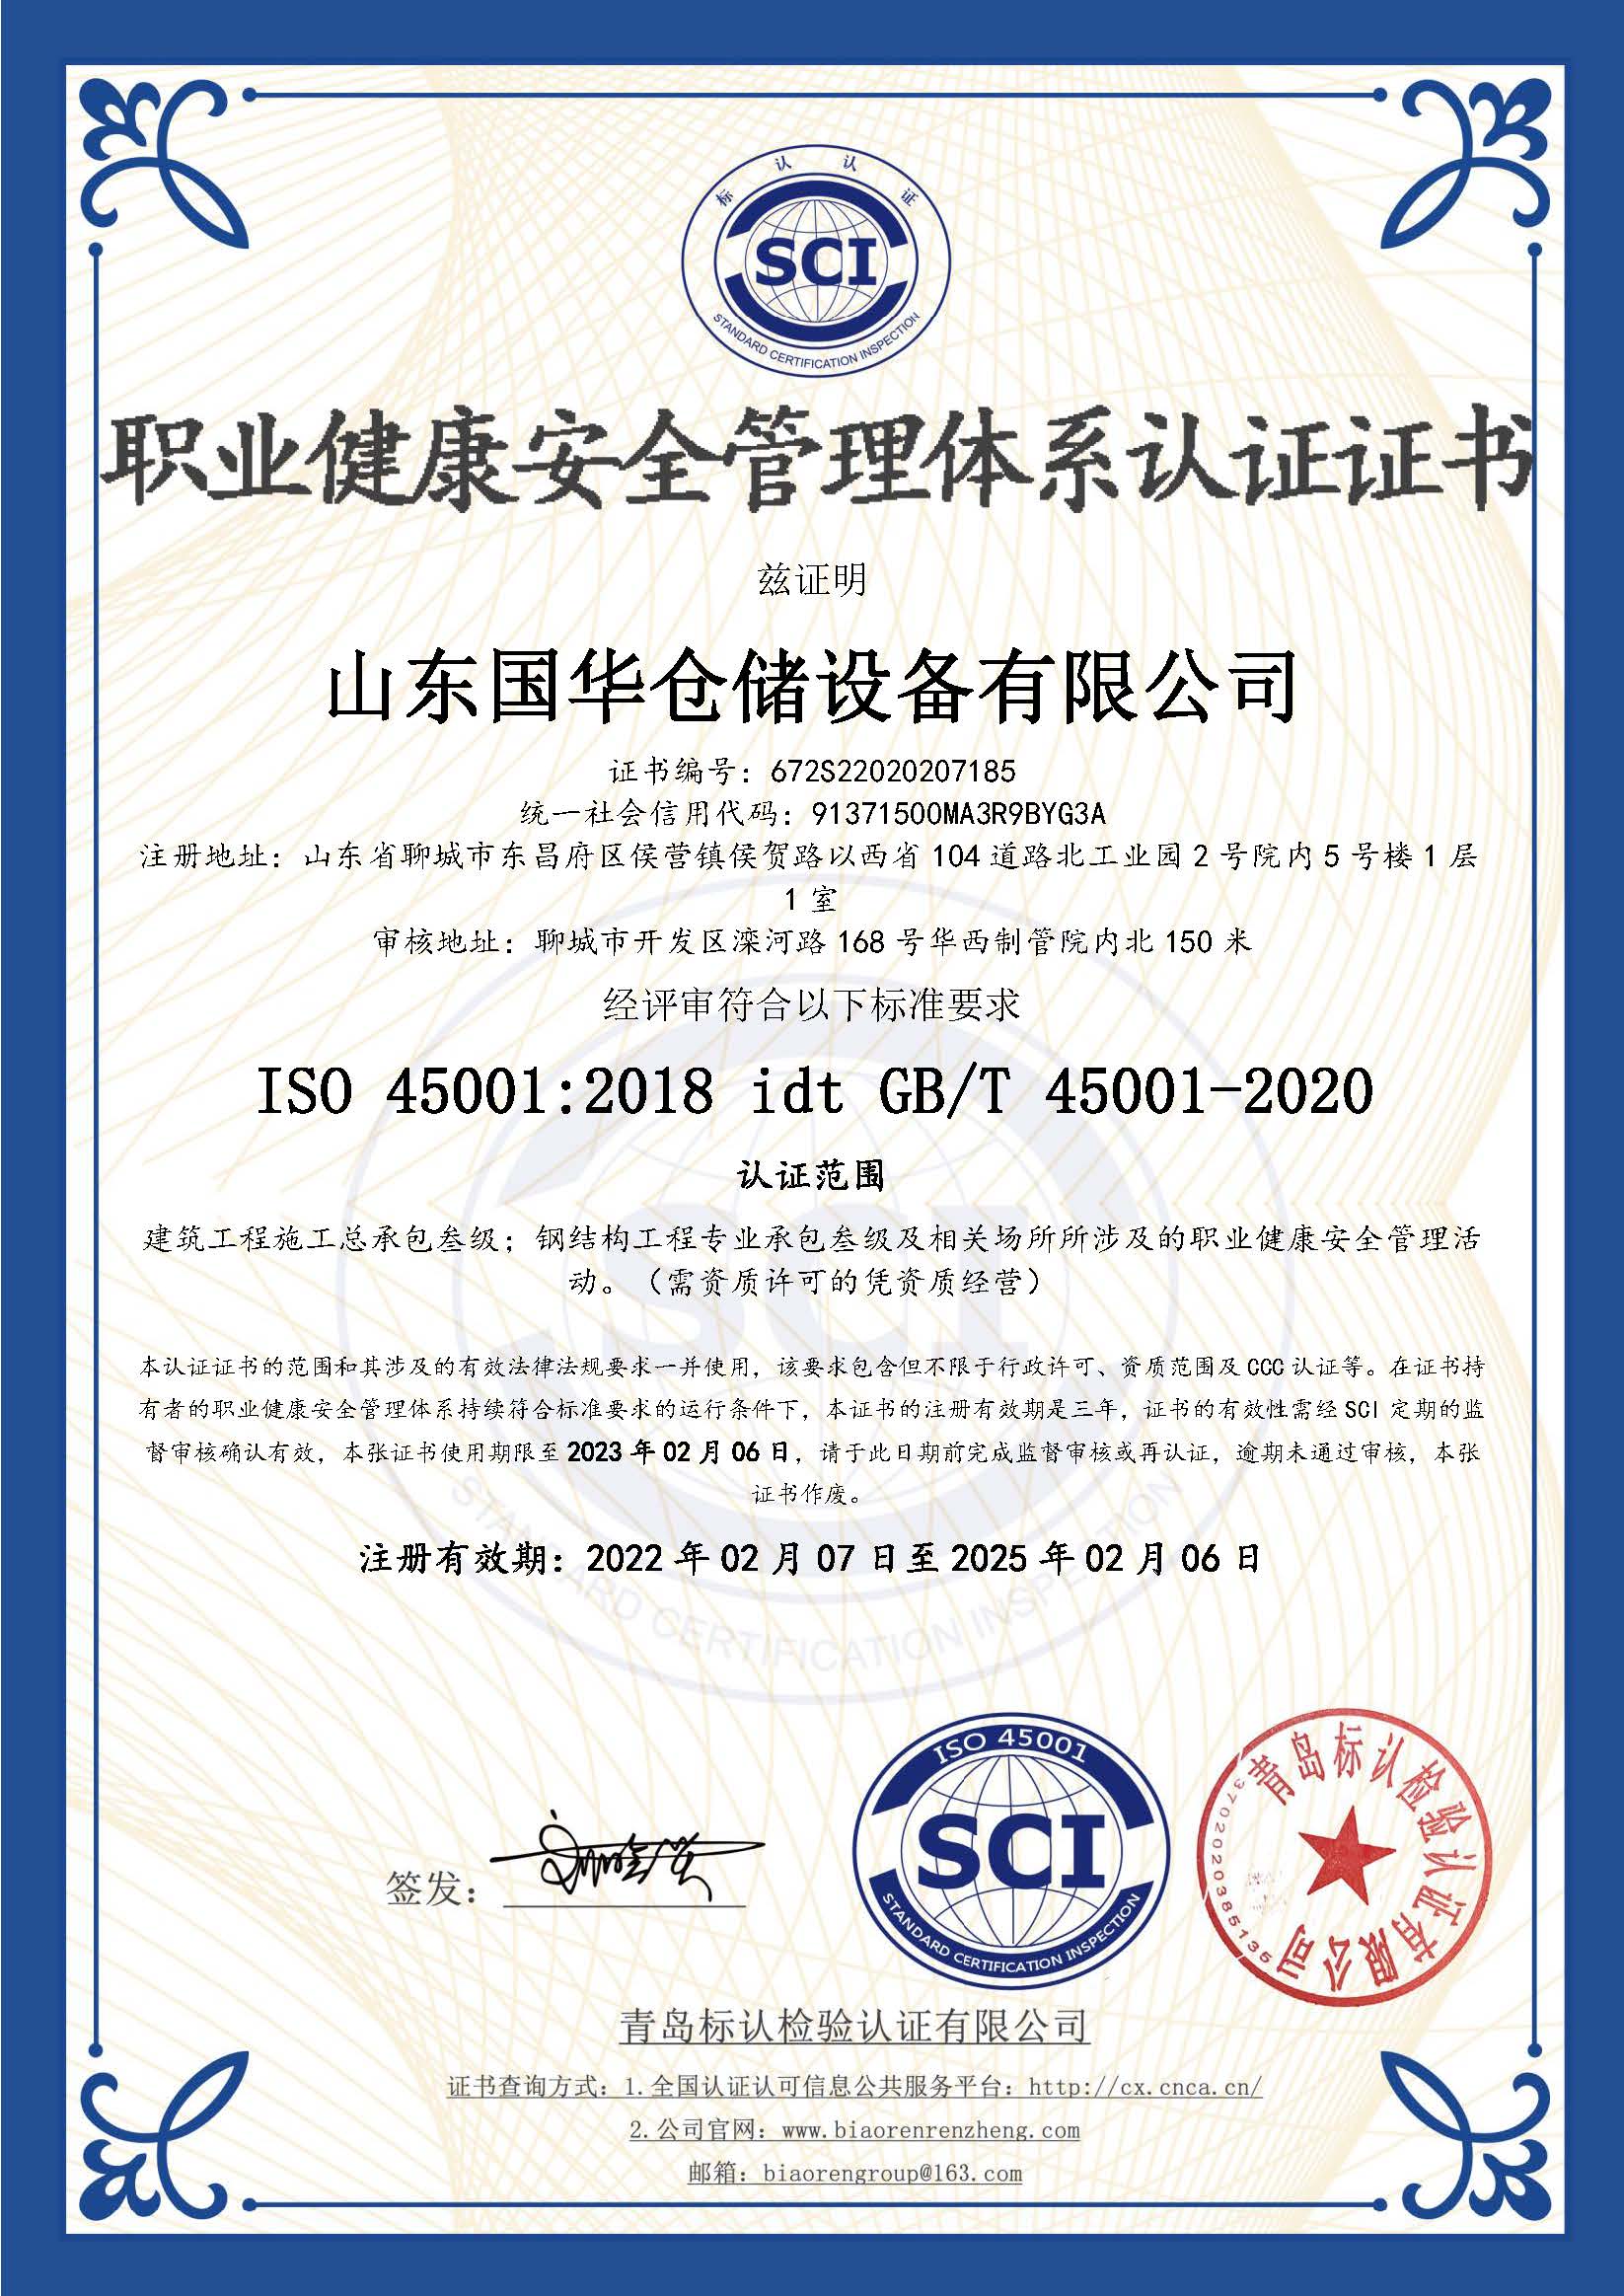 榆林钢板仓职业健康安全管理体系认证证书